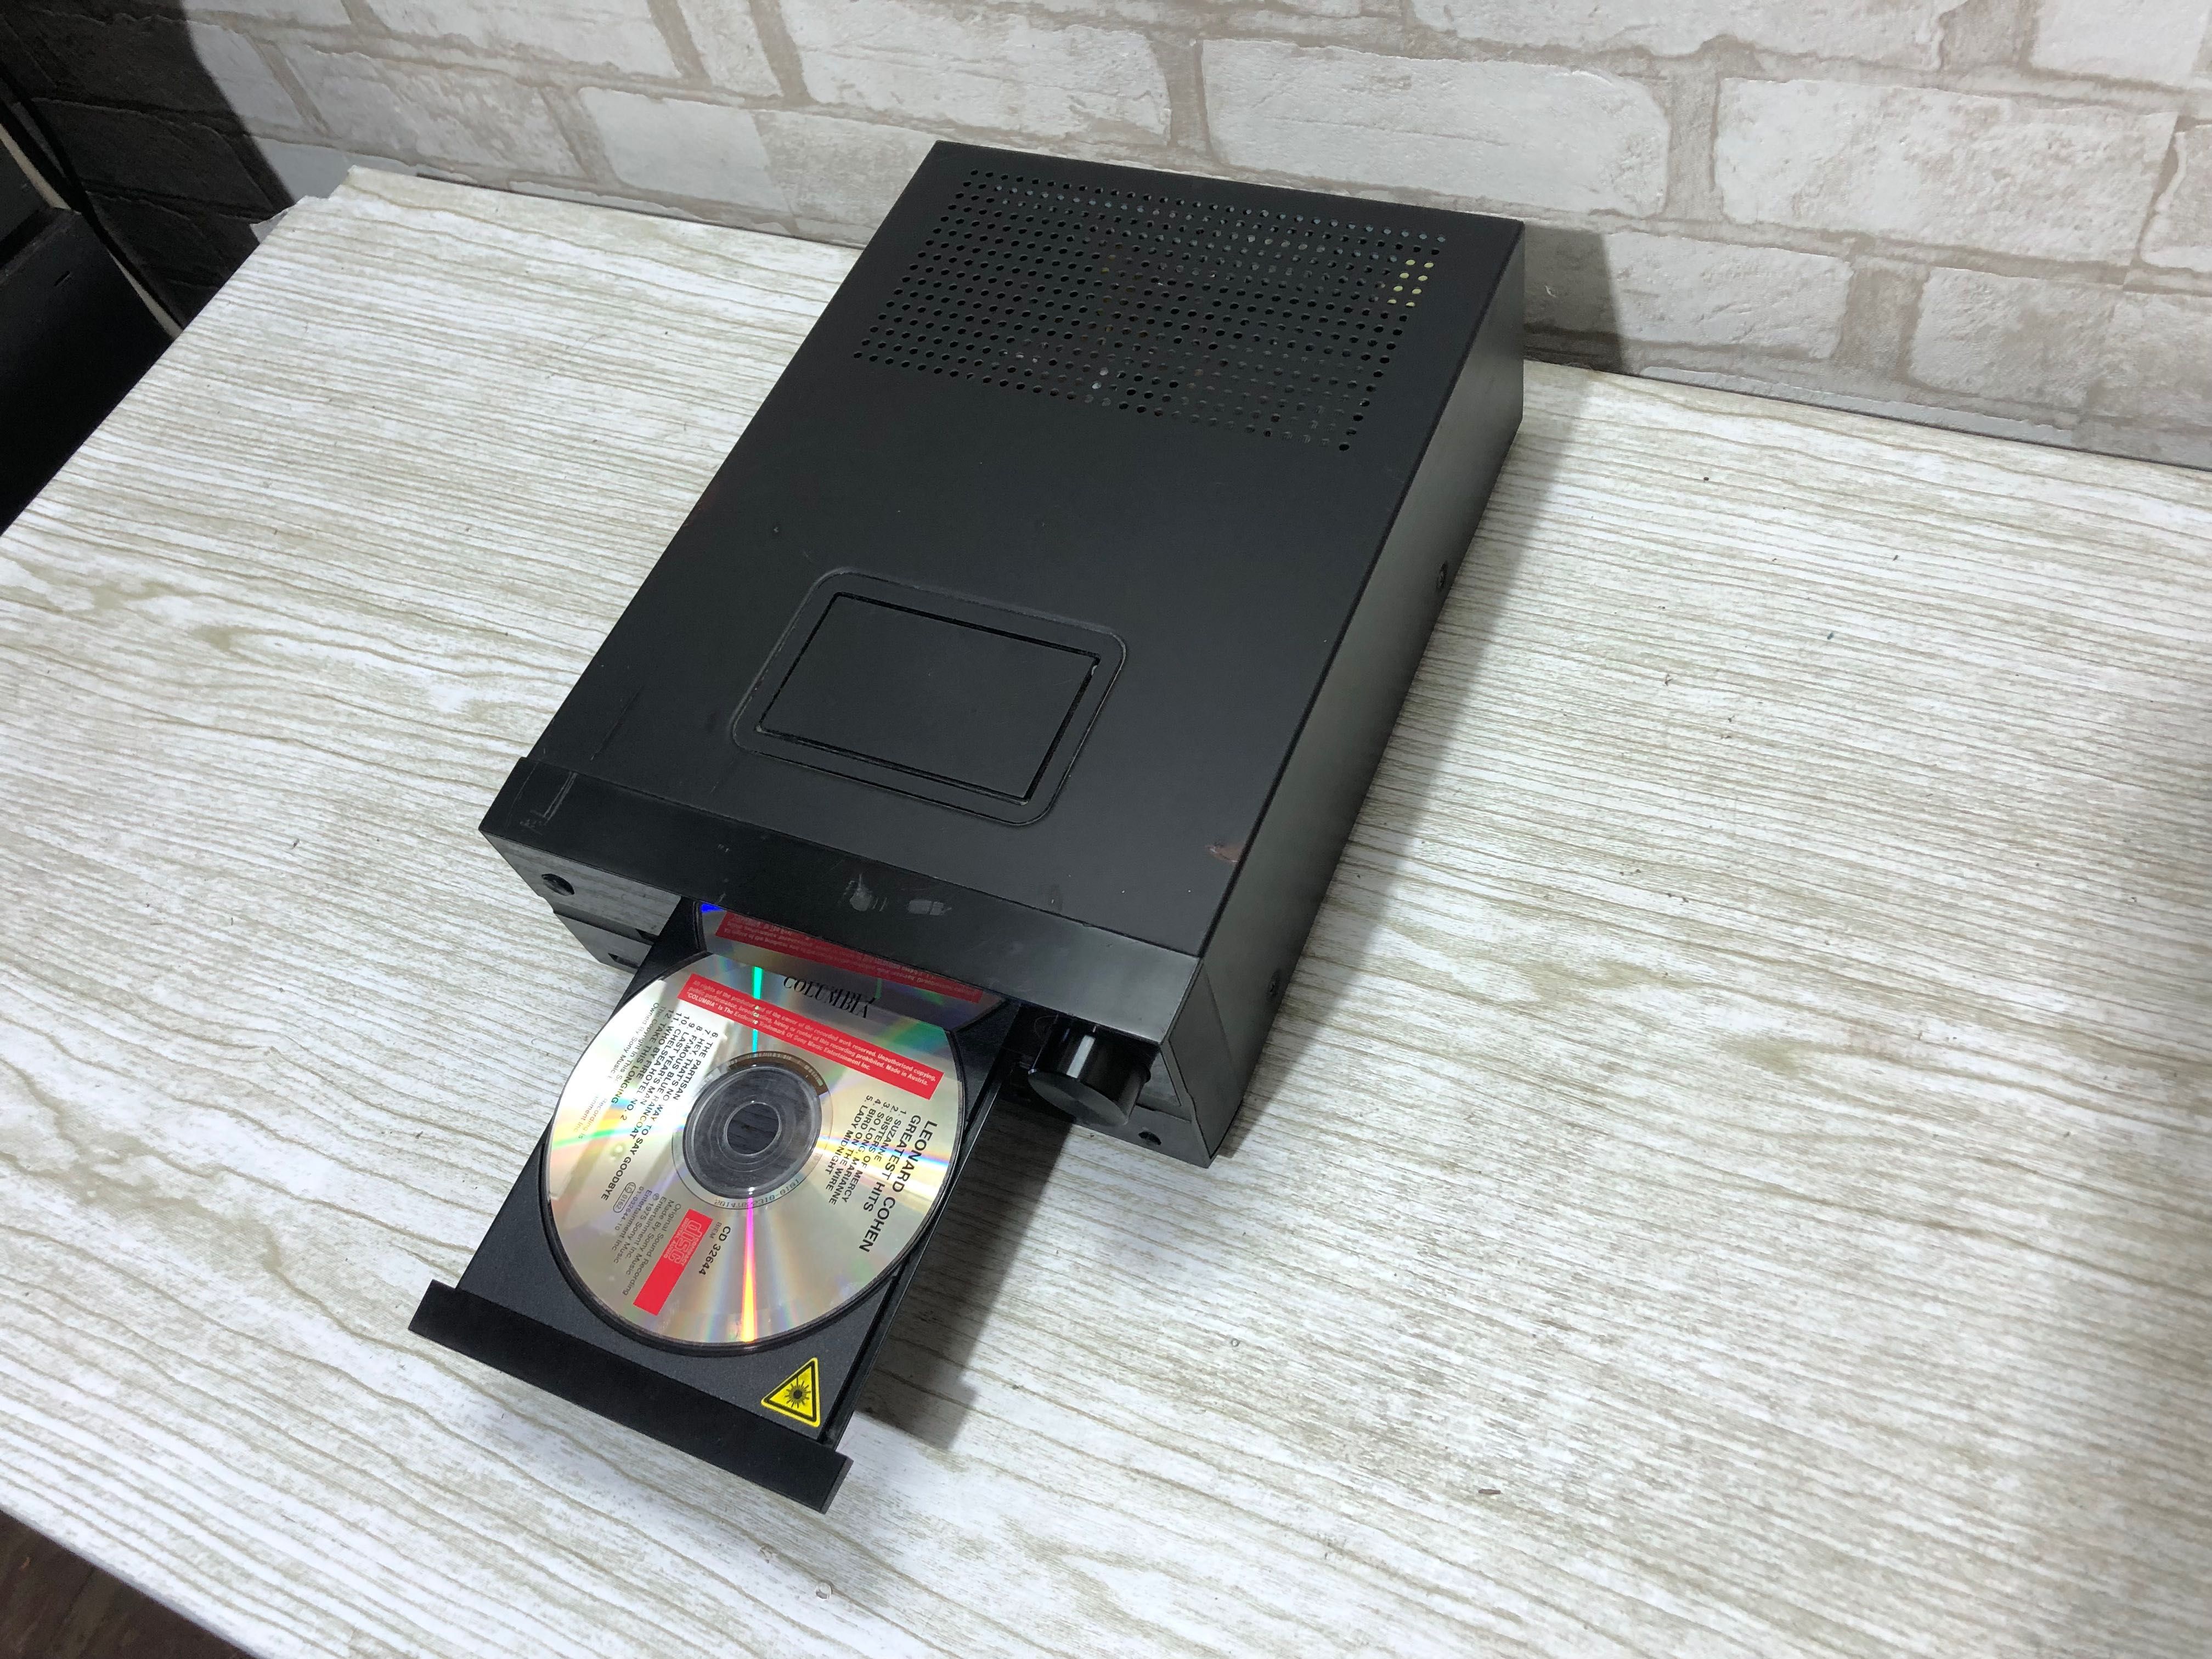 FM/CD/AUX ресивер/підсилювач Medion MD 83615 б/у USB. CD